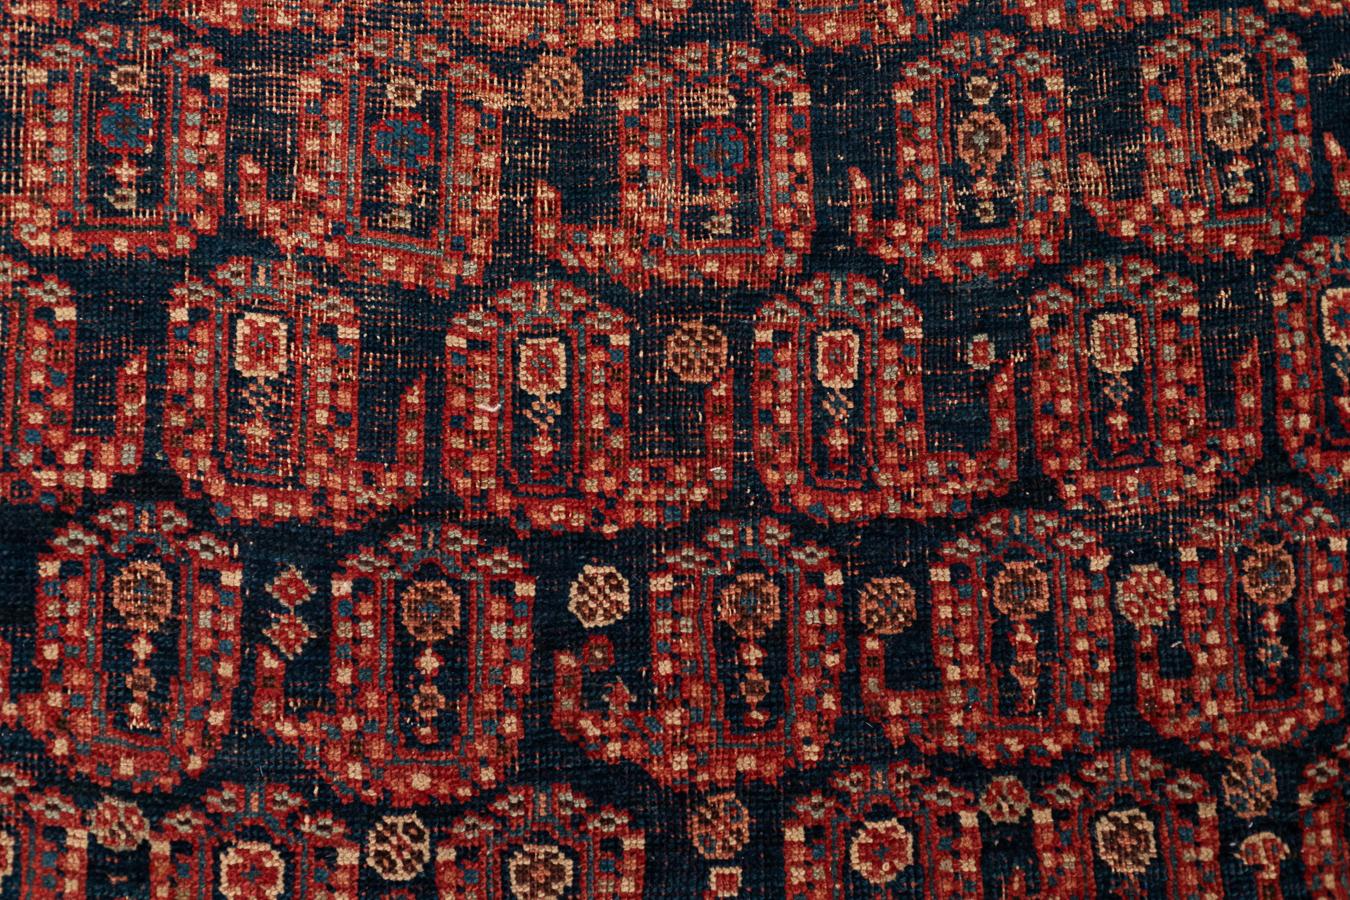 Afshar -  Südpersien

Sie werden von diesem hochentwickelten Teppich fasziniert sein, der vor etwa 150 Jahren von den persischen Afschar-Nomaden gewebt wurde. Mit seinem sich wiederholenden Design und den präzisen Details überrascht dieser große